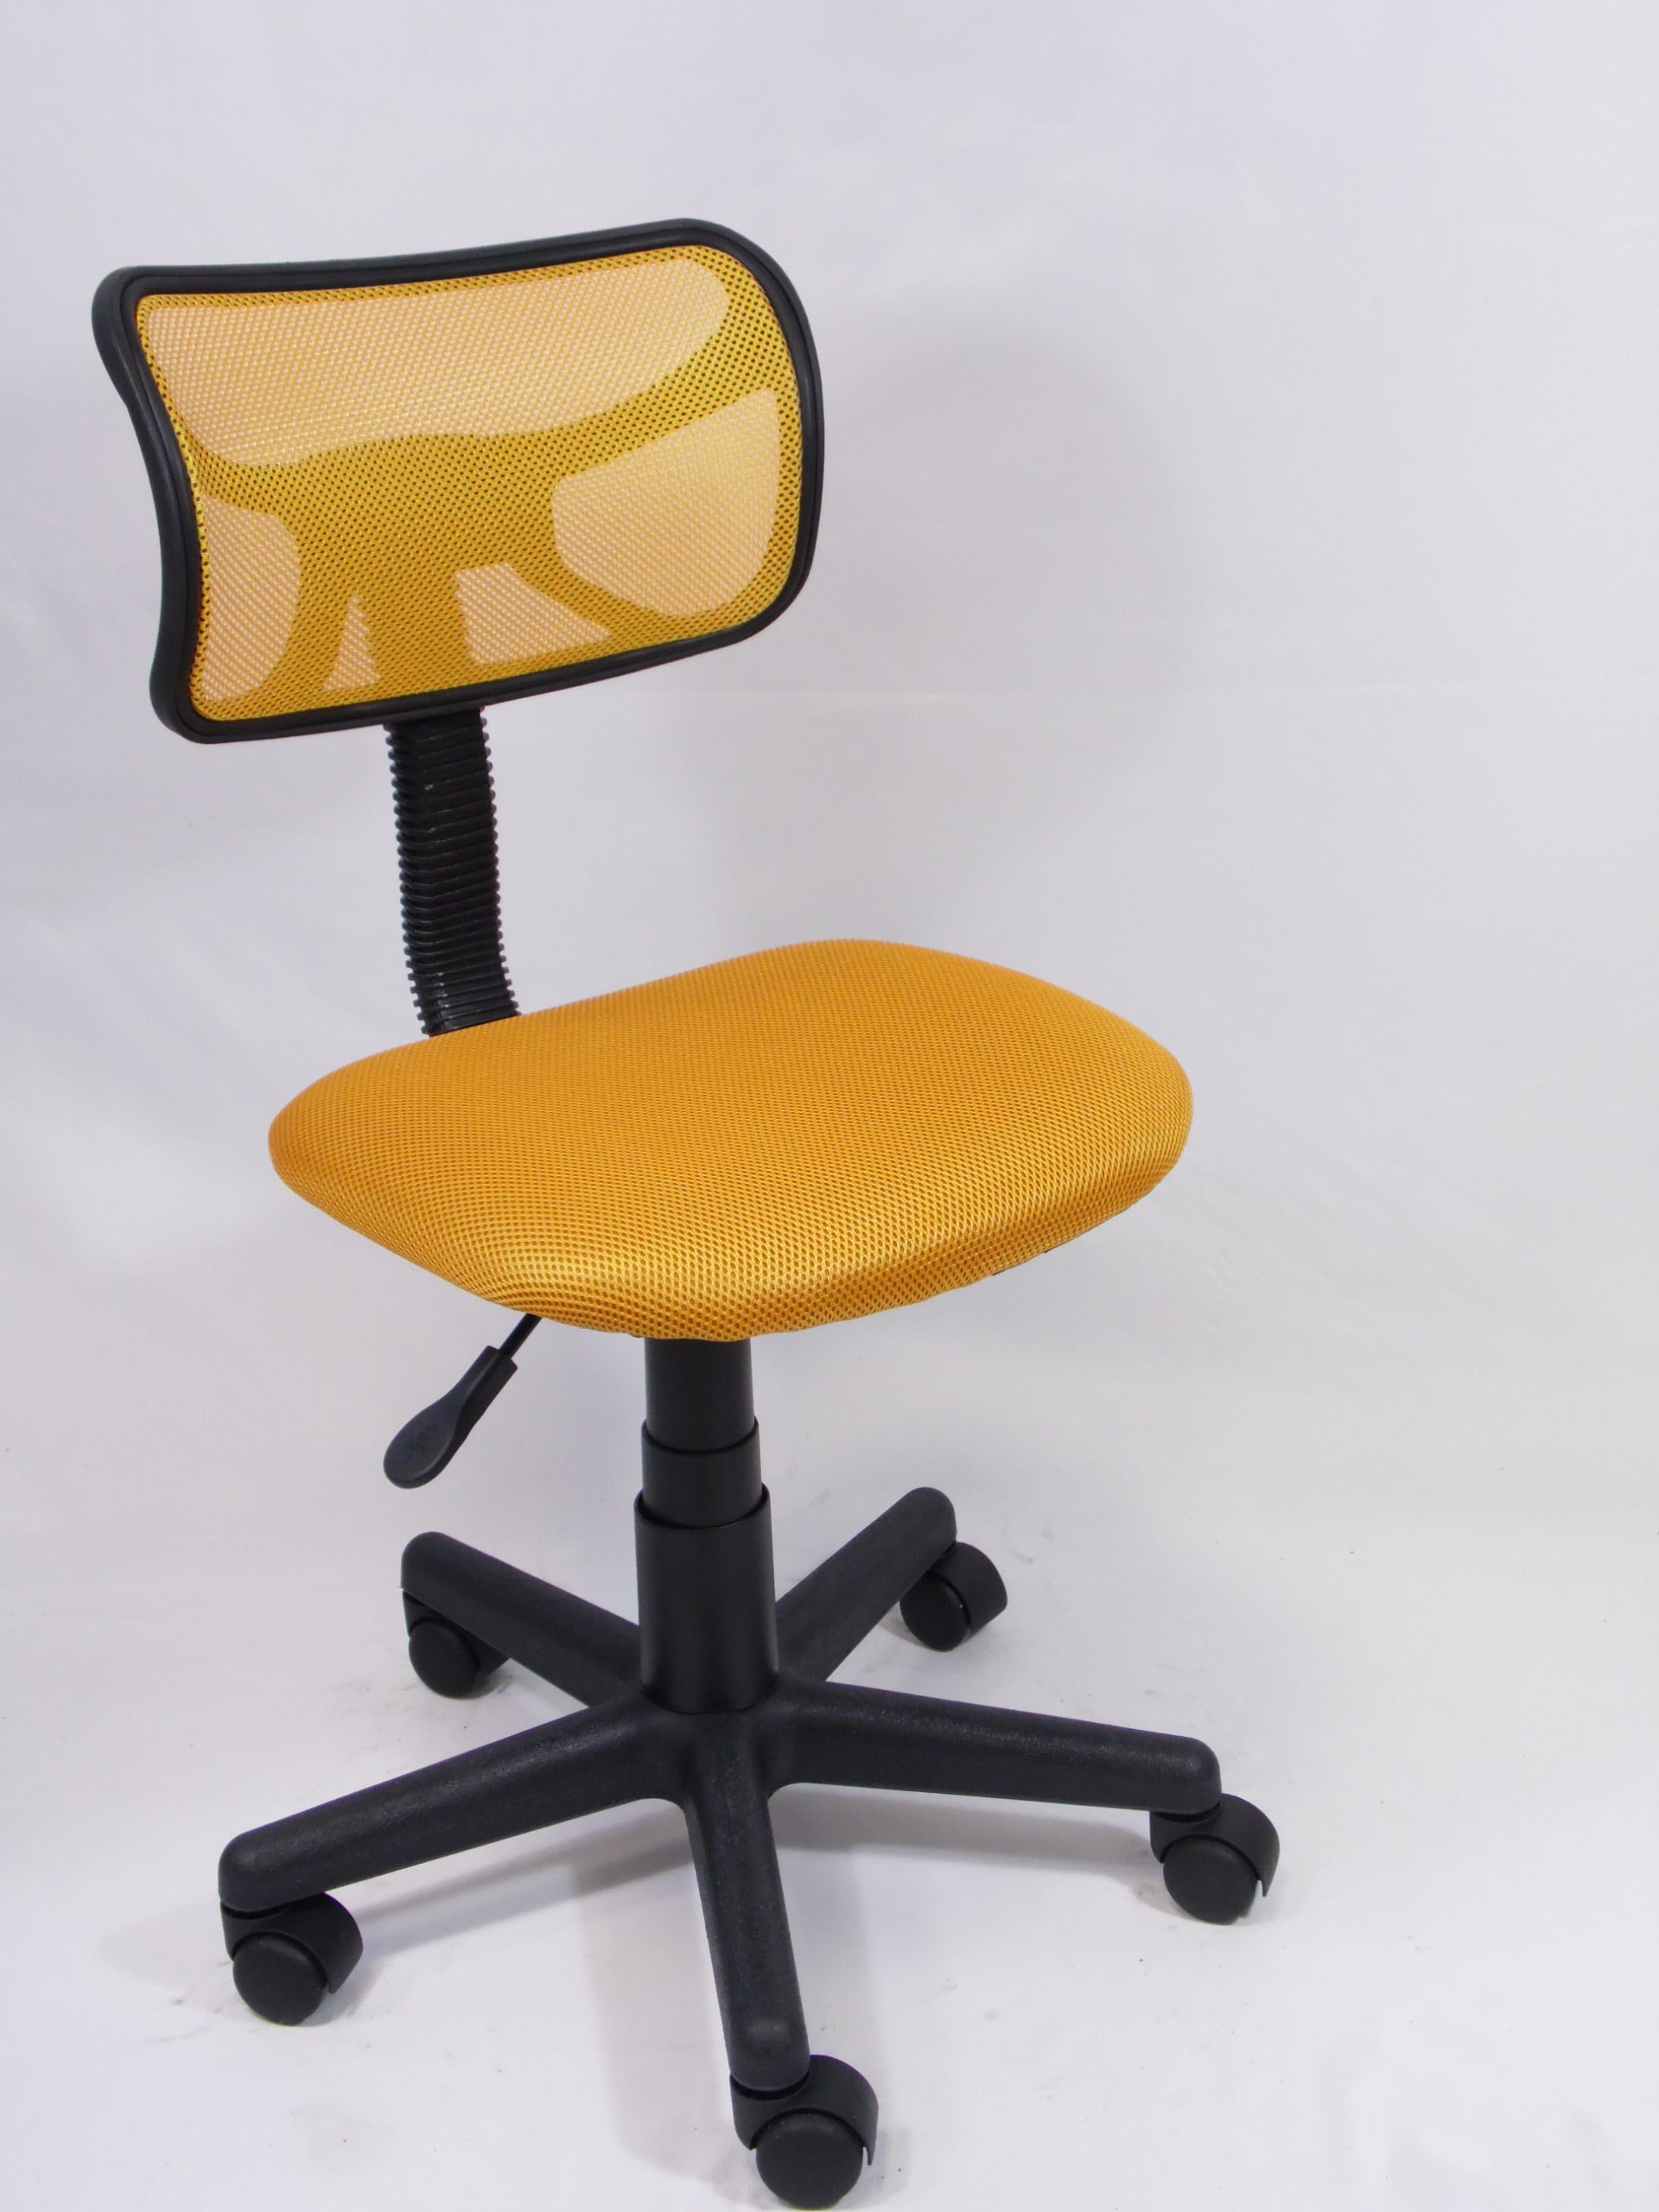 sedie per pc dimensioni: h max 83cm x d 55cm, h sedile 45cm x d sedile 44cm; Materiale: plastica e tessuto color giallo